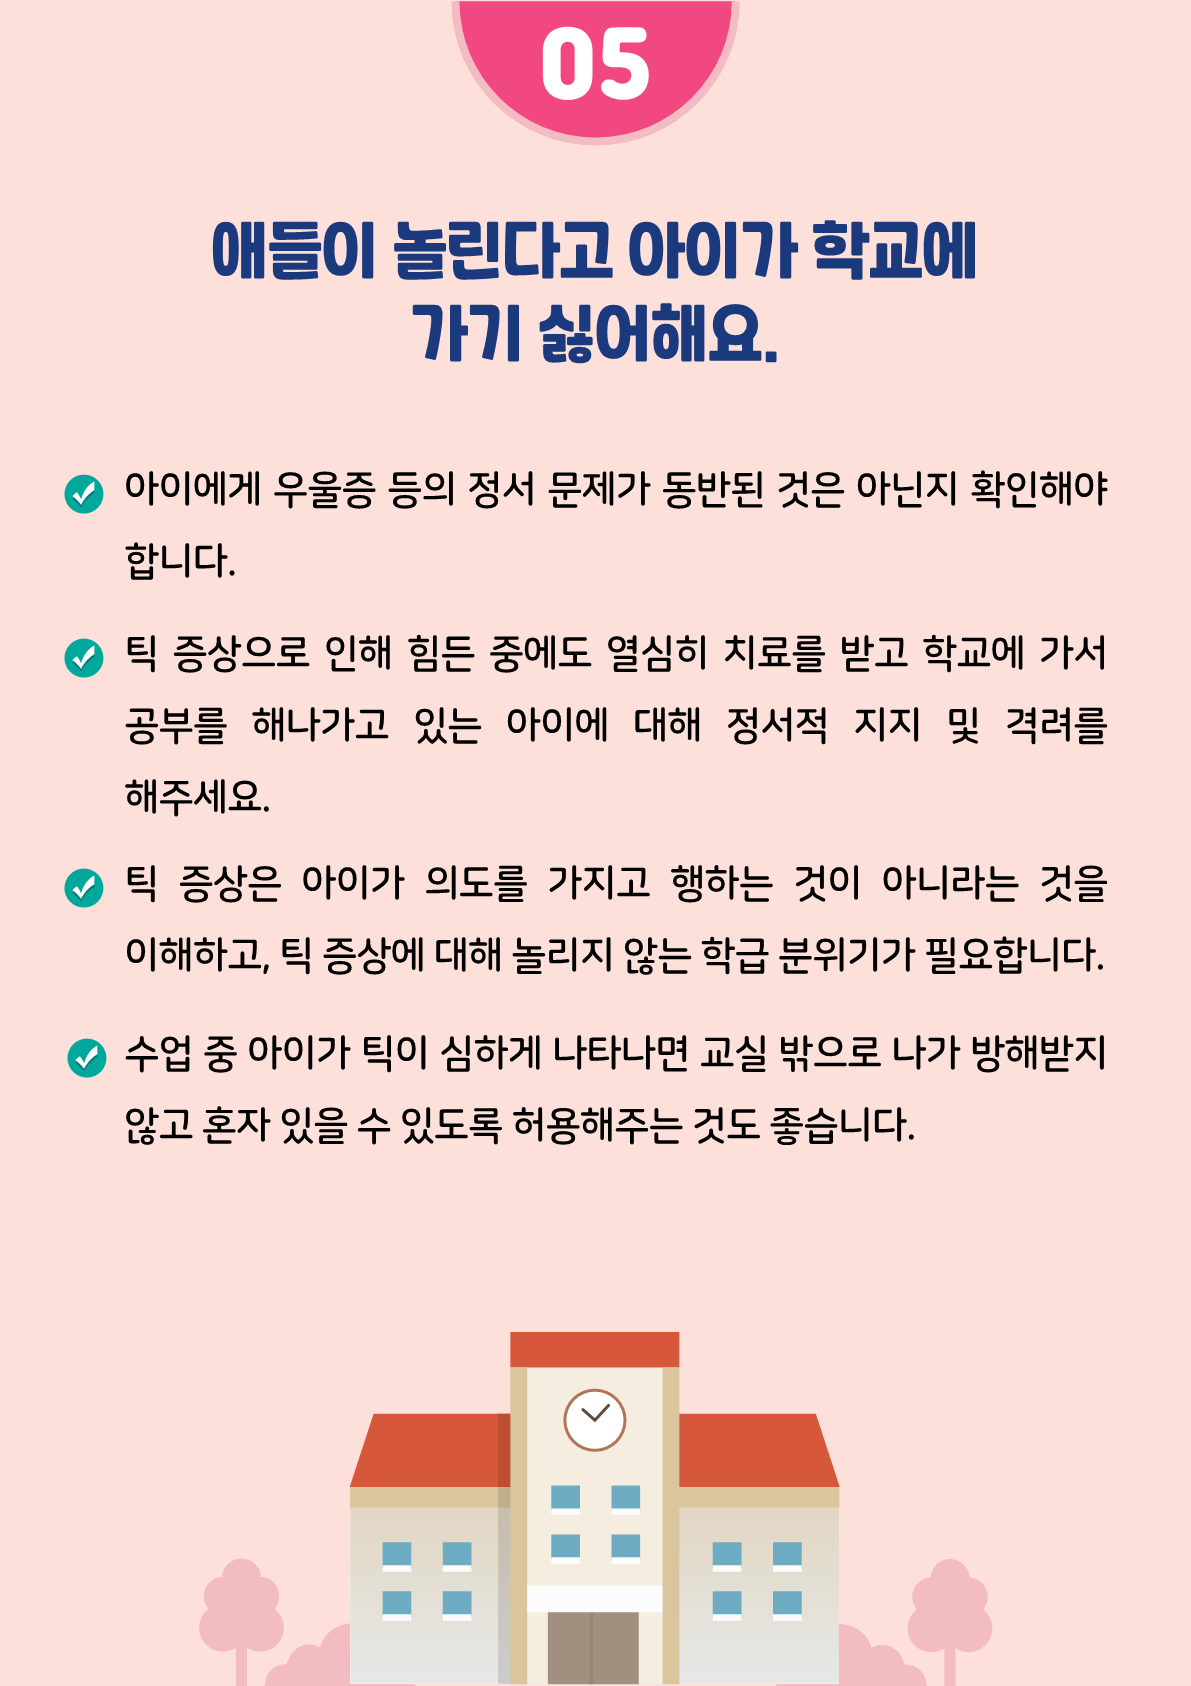 [붙임2]카드뉴스 제2021-5_틱장애(초등학부모용)_9.png